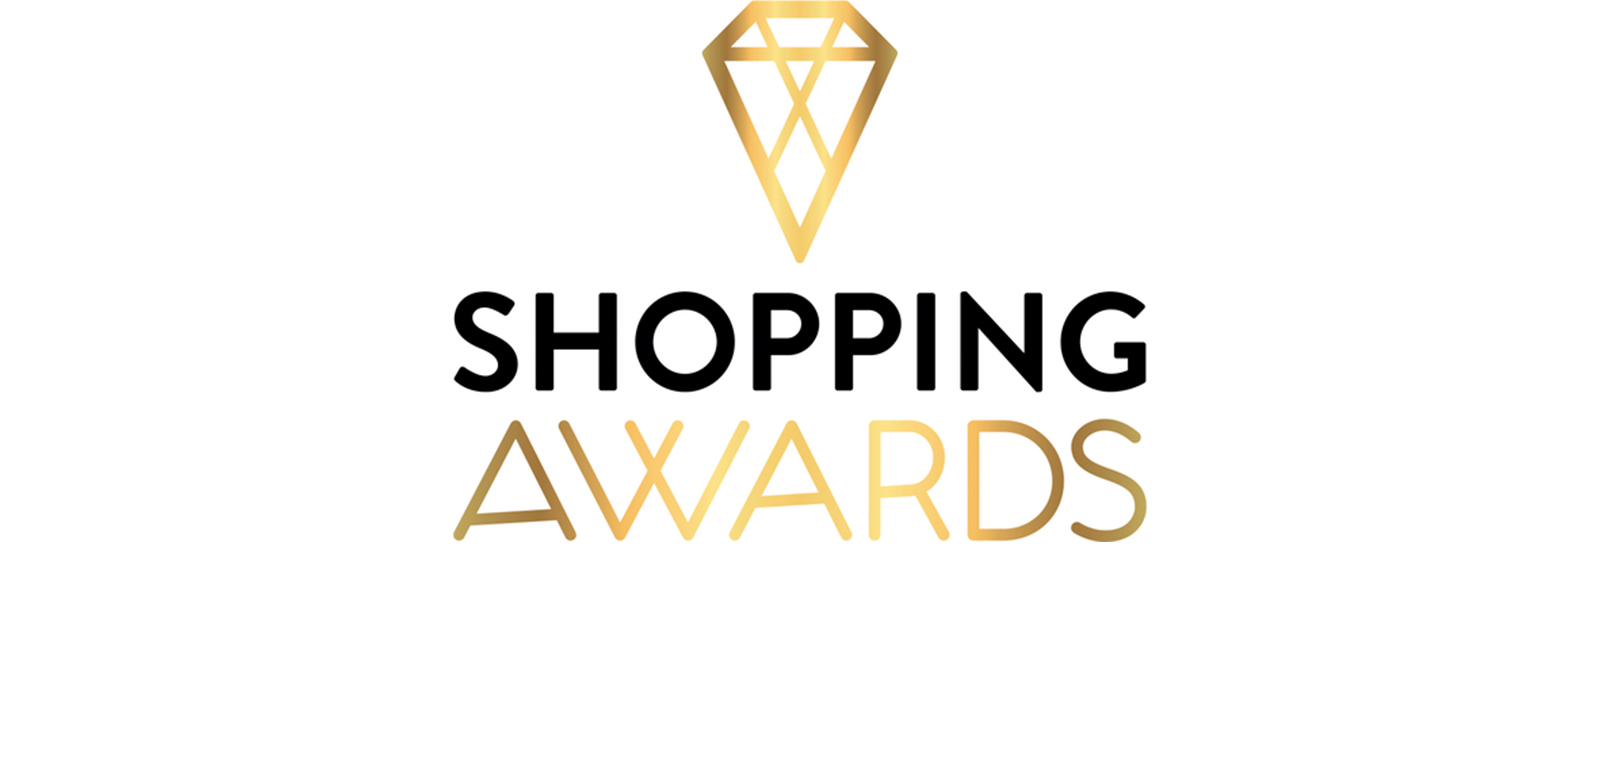 Stichting Shopping Awards organiseert sinds haar oprichting in 2001 jaarlijks verschillende onafhankelijke award-verkiezingen voor de beste (web)winkelbedrijven van Nederland.